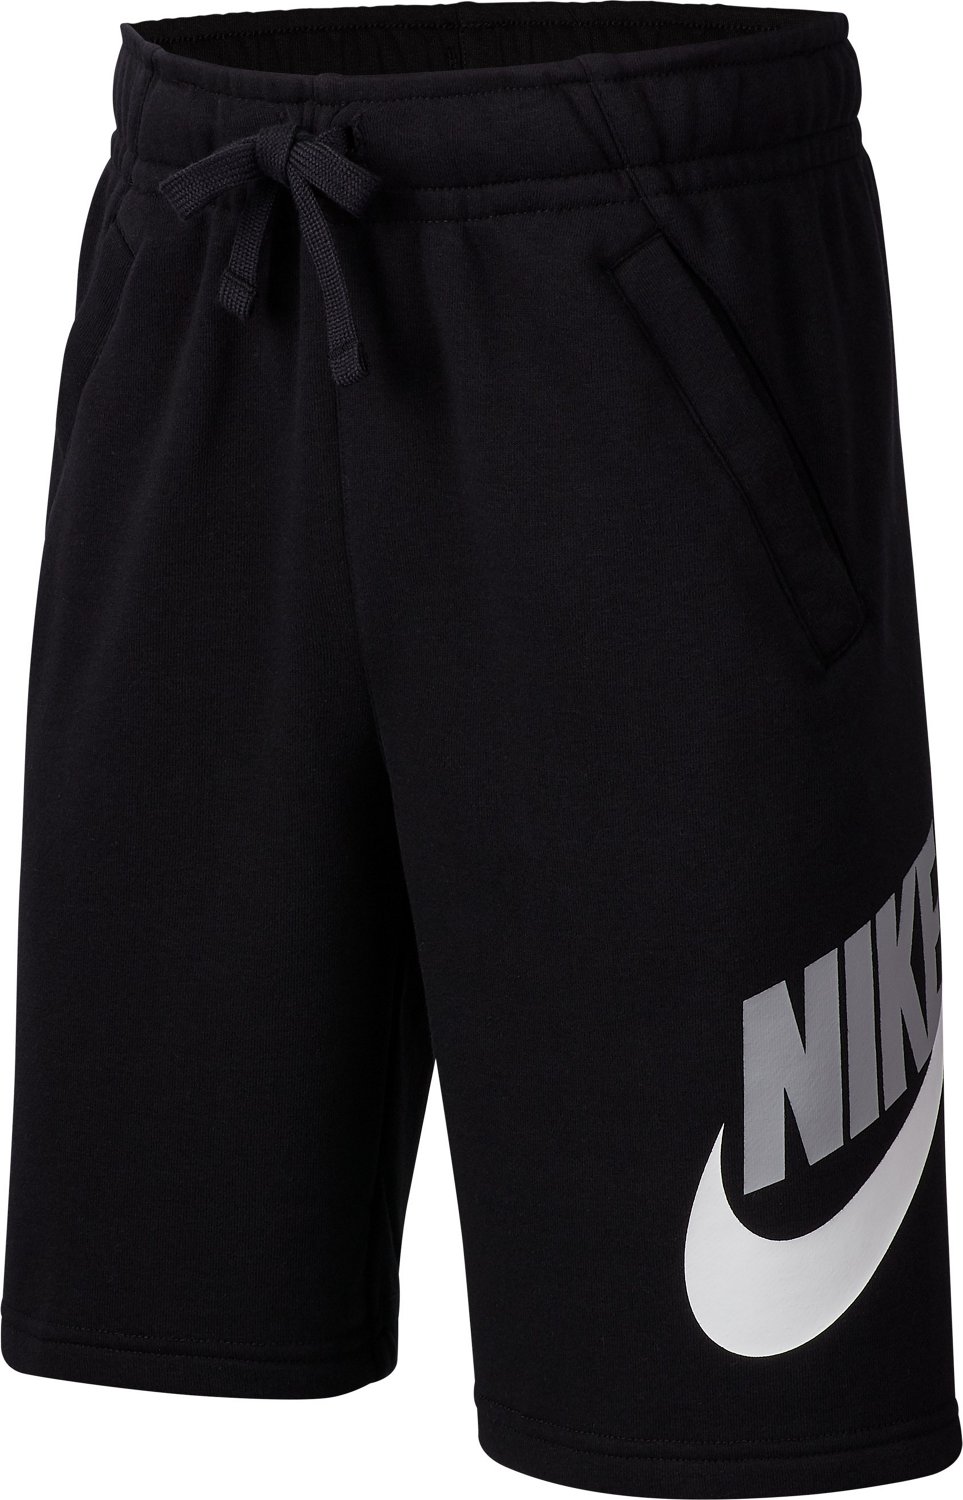 Academy Shorts 8 Nike HBR Sportswear Fleece | Boys\' Club in